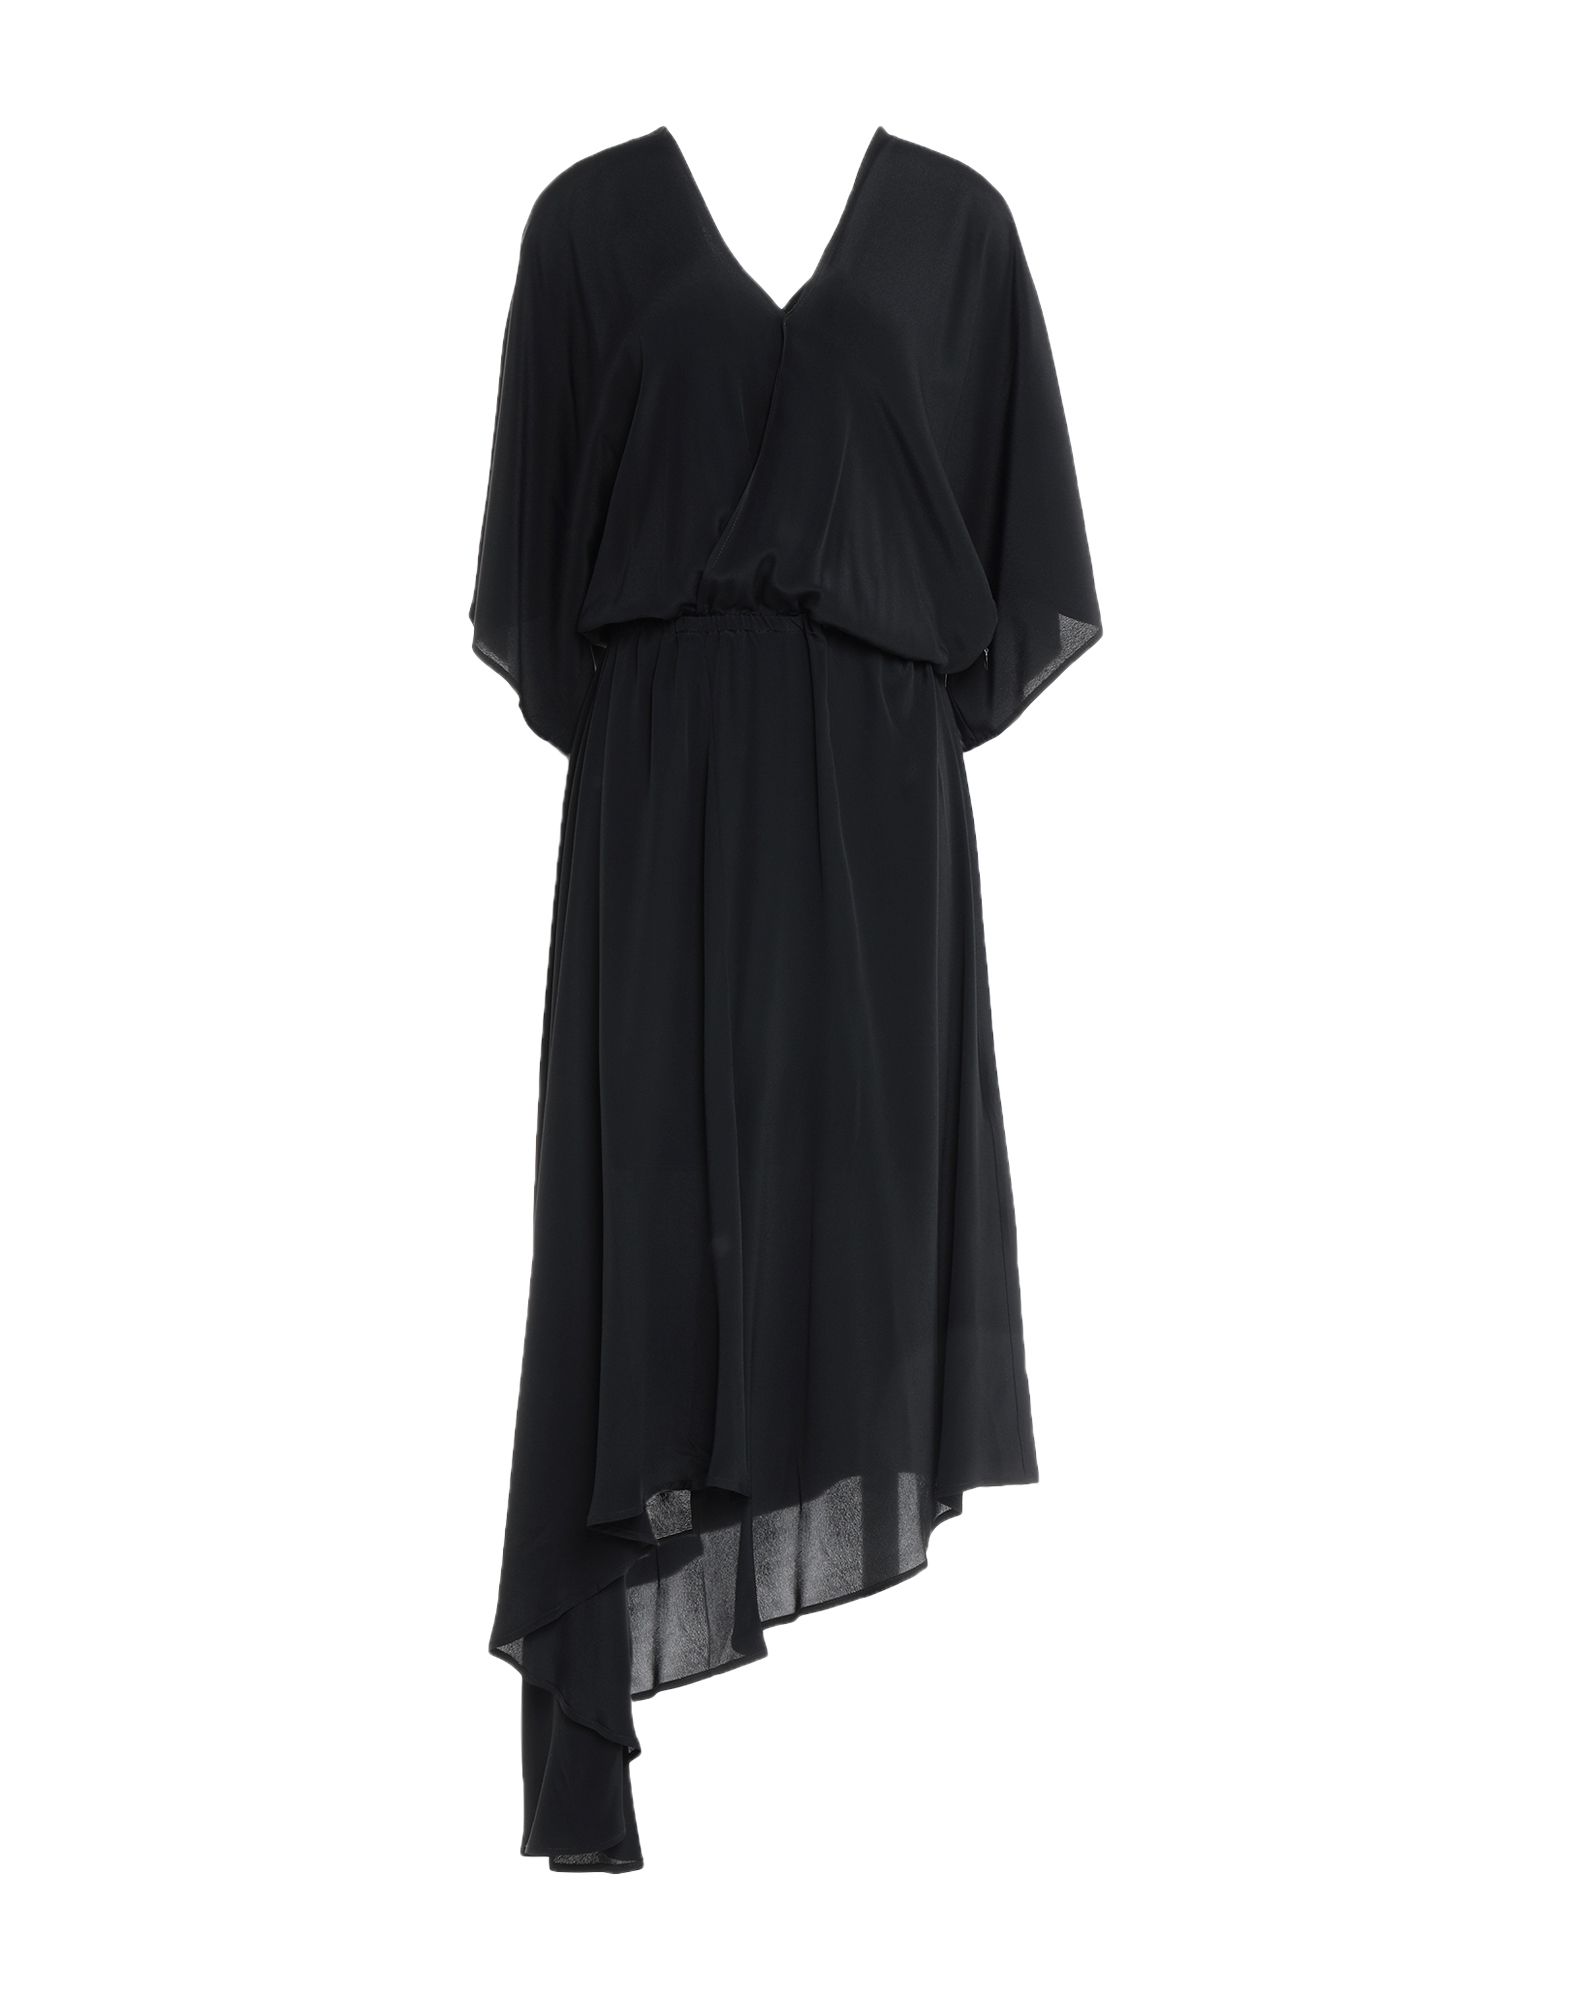 Платье  - Черный цвет